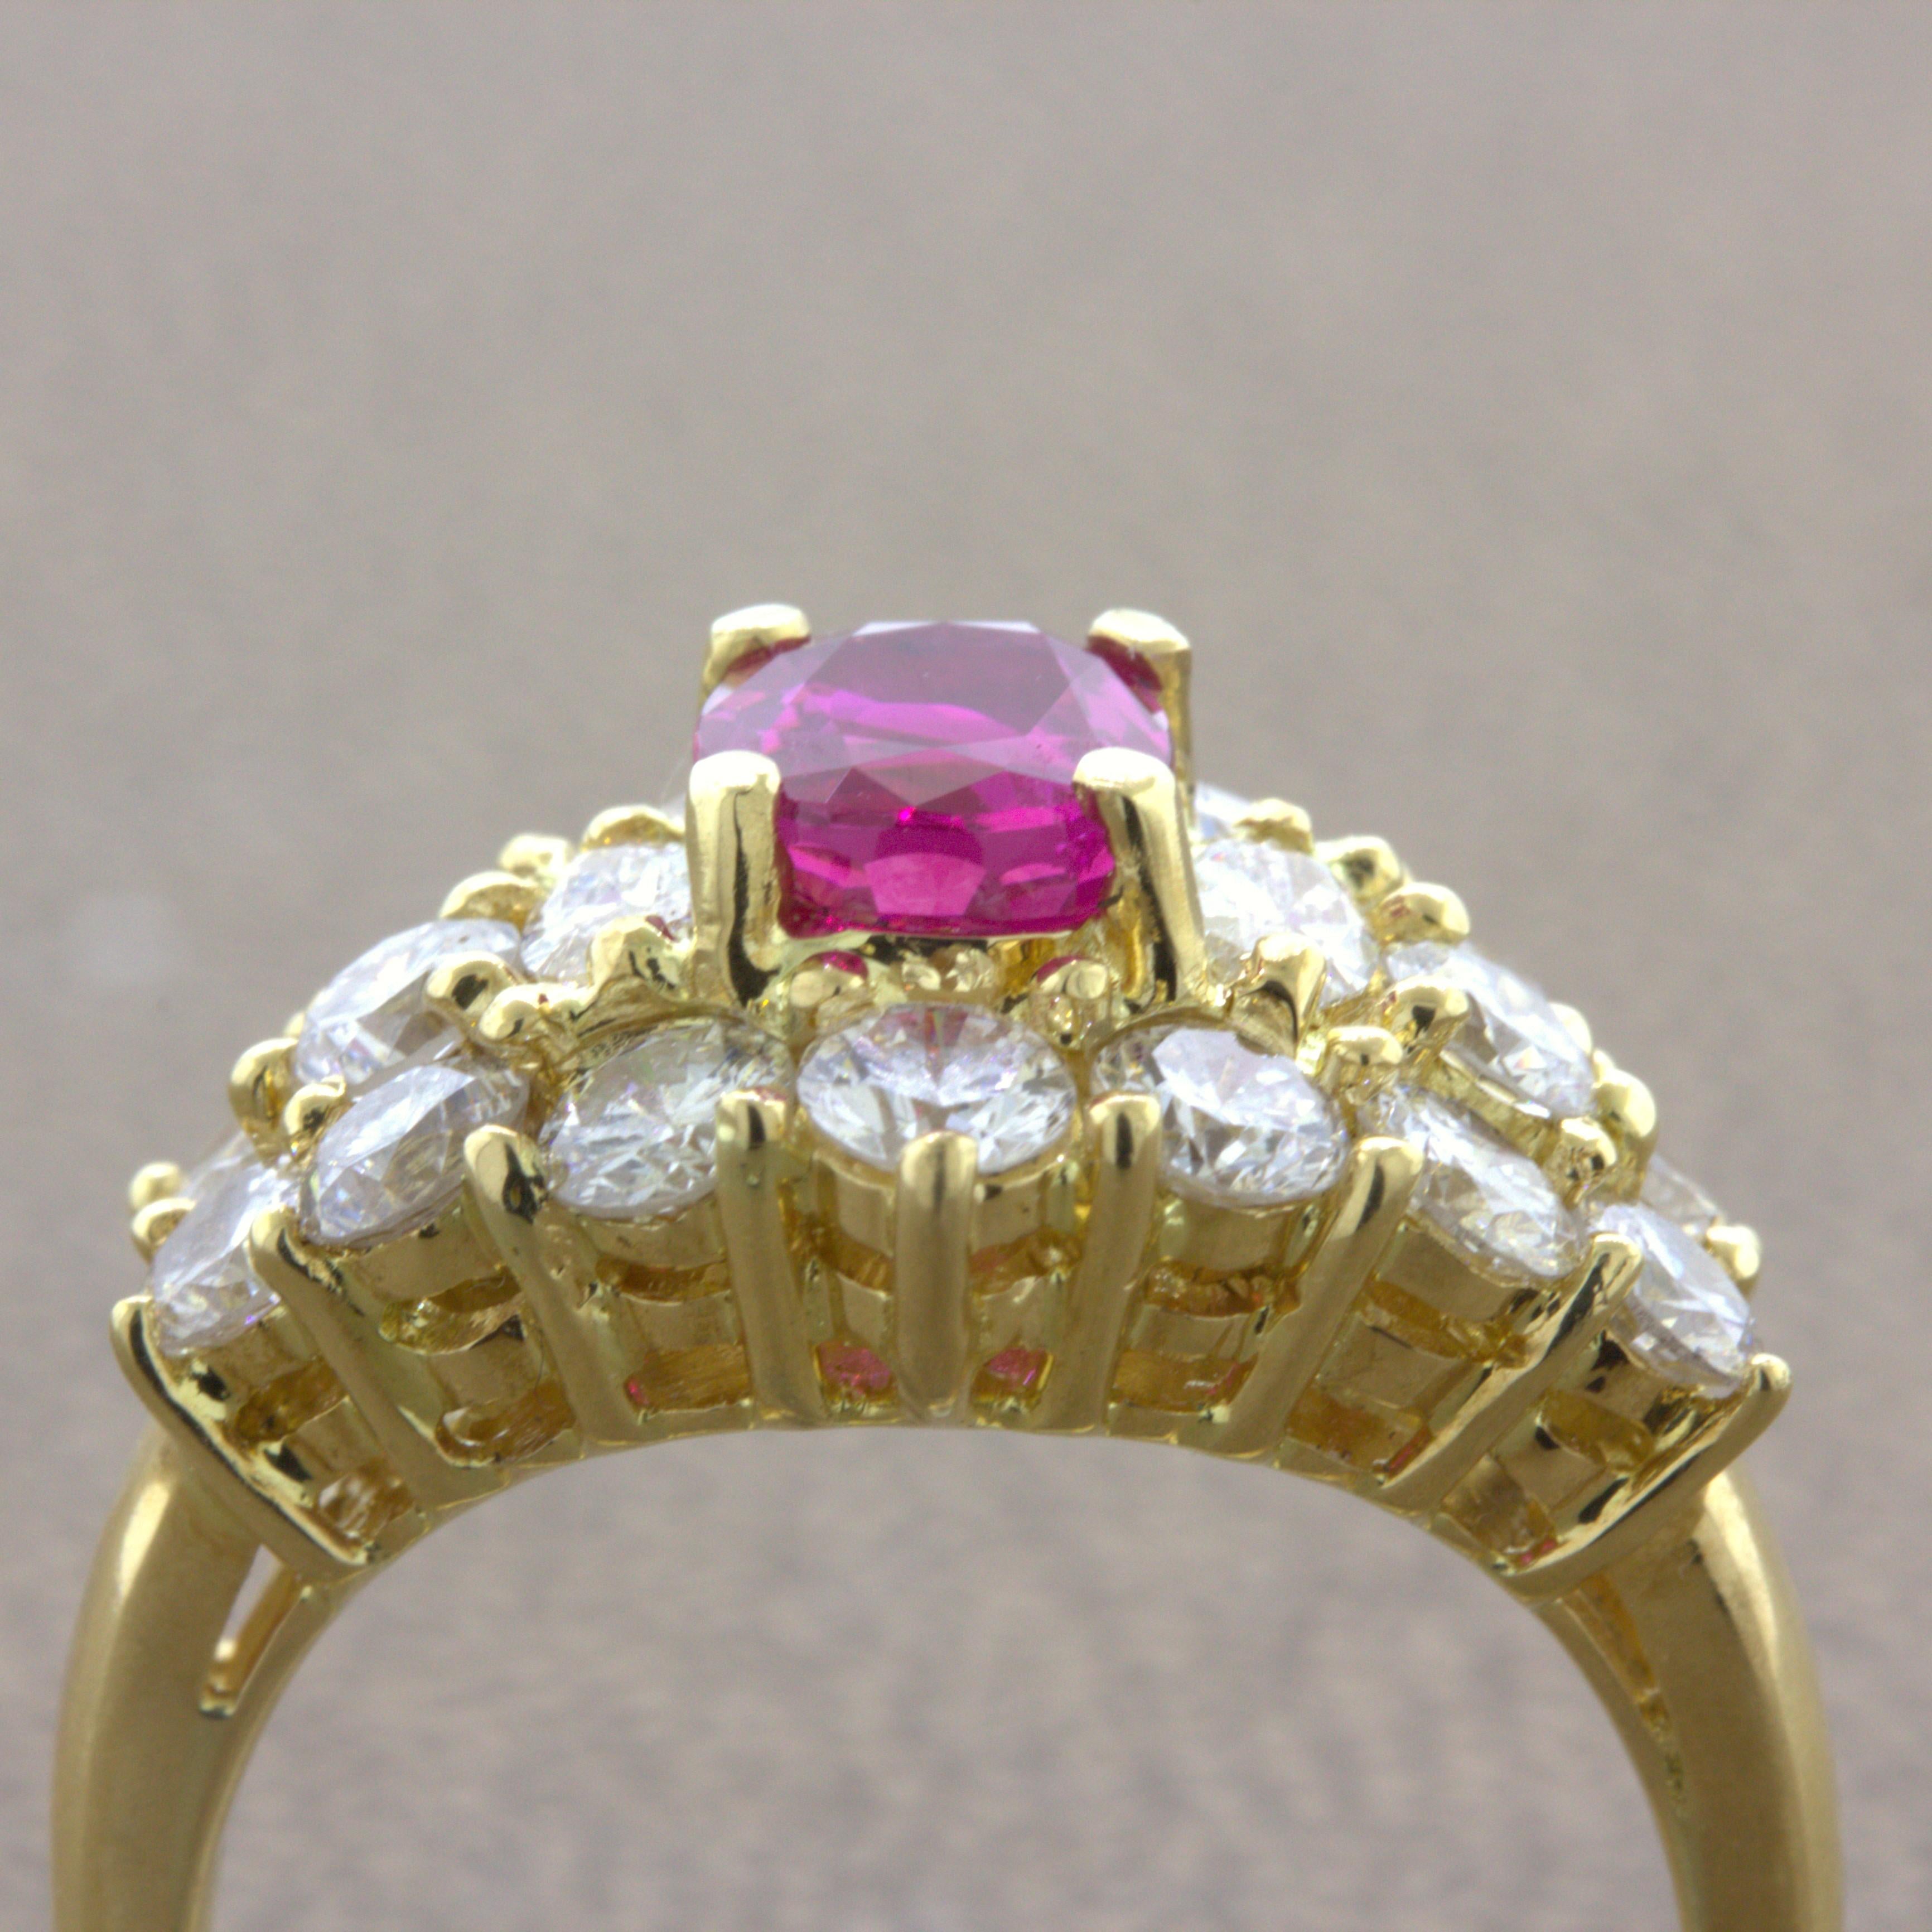 1.09 Carat Burma No-Heat Ruby Diamond 18K Yellow Gold Ring, GIA Certified For Sale 1